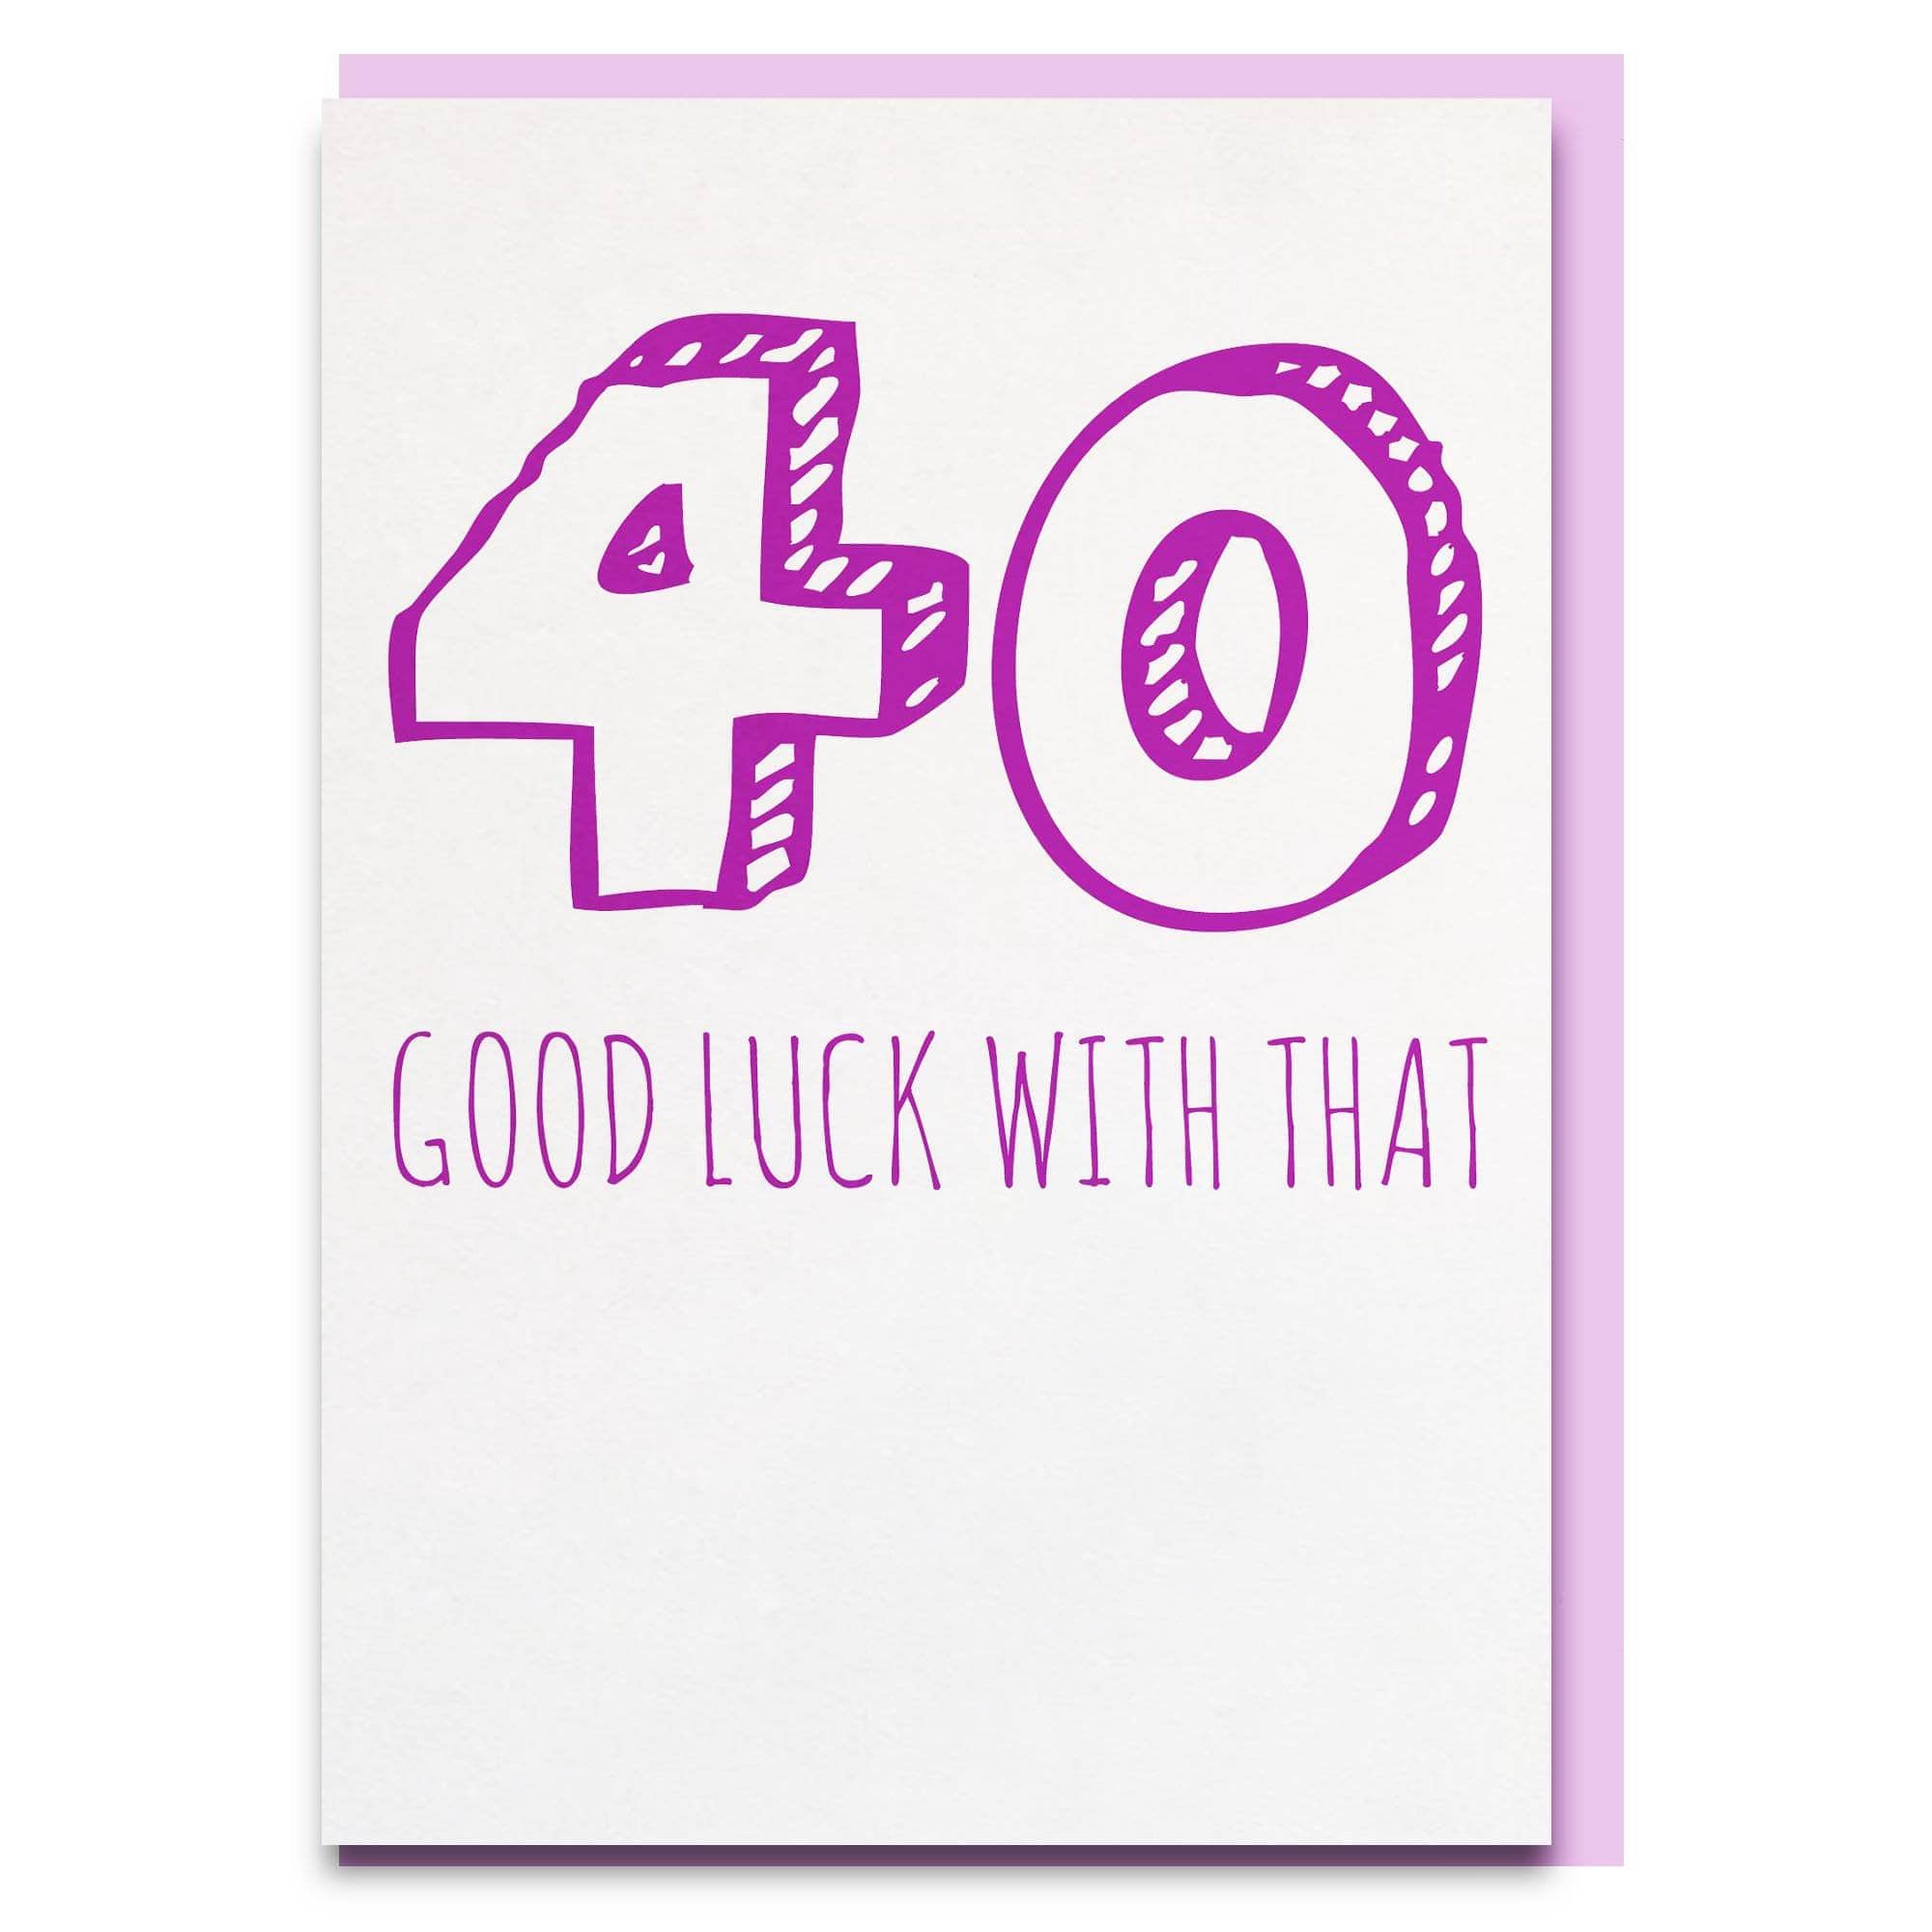 40 Good Luck